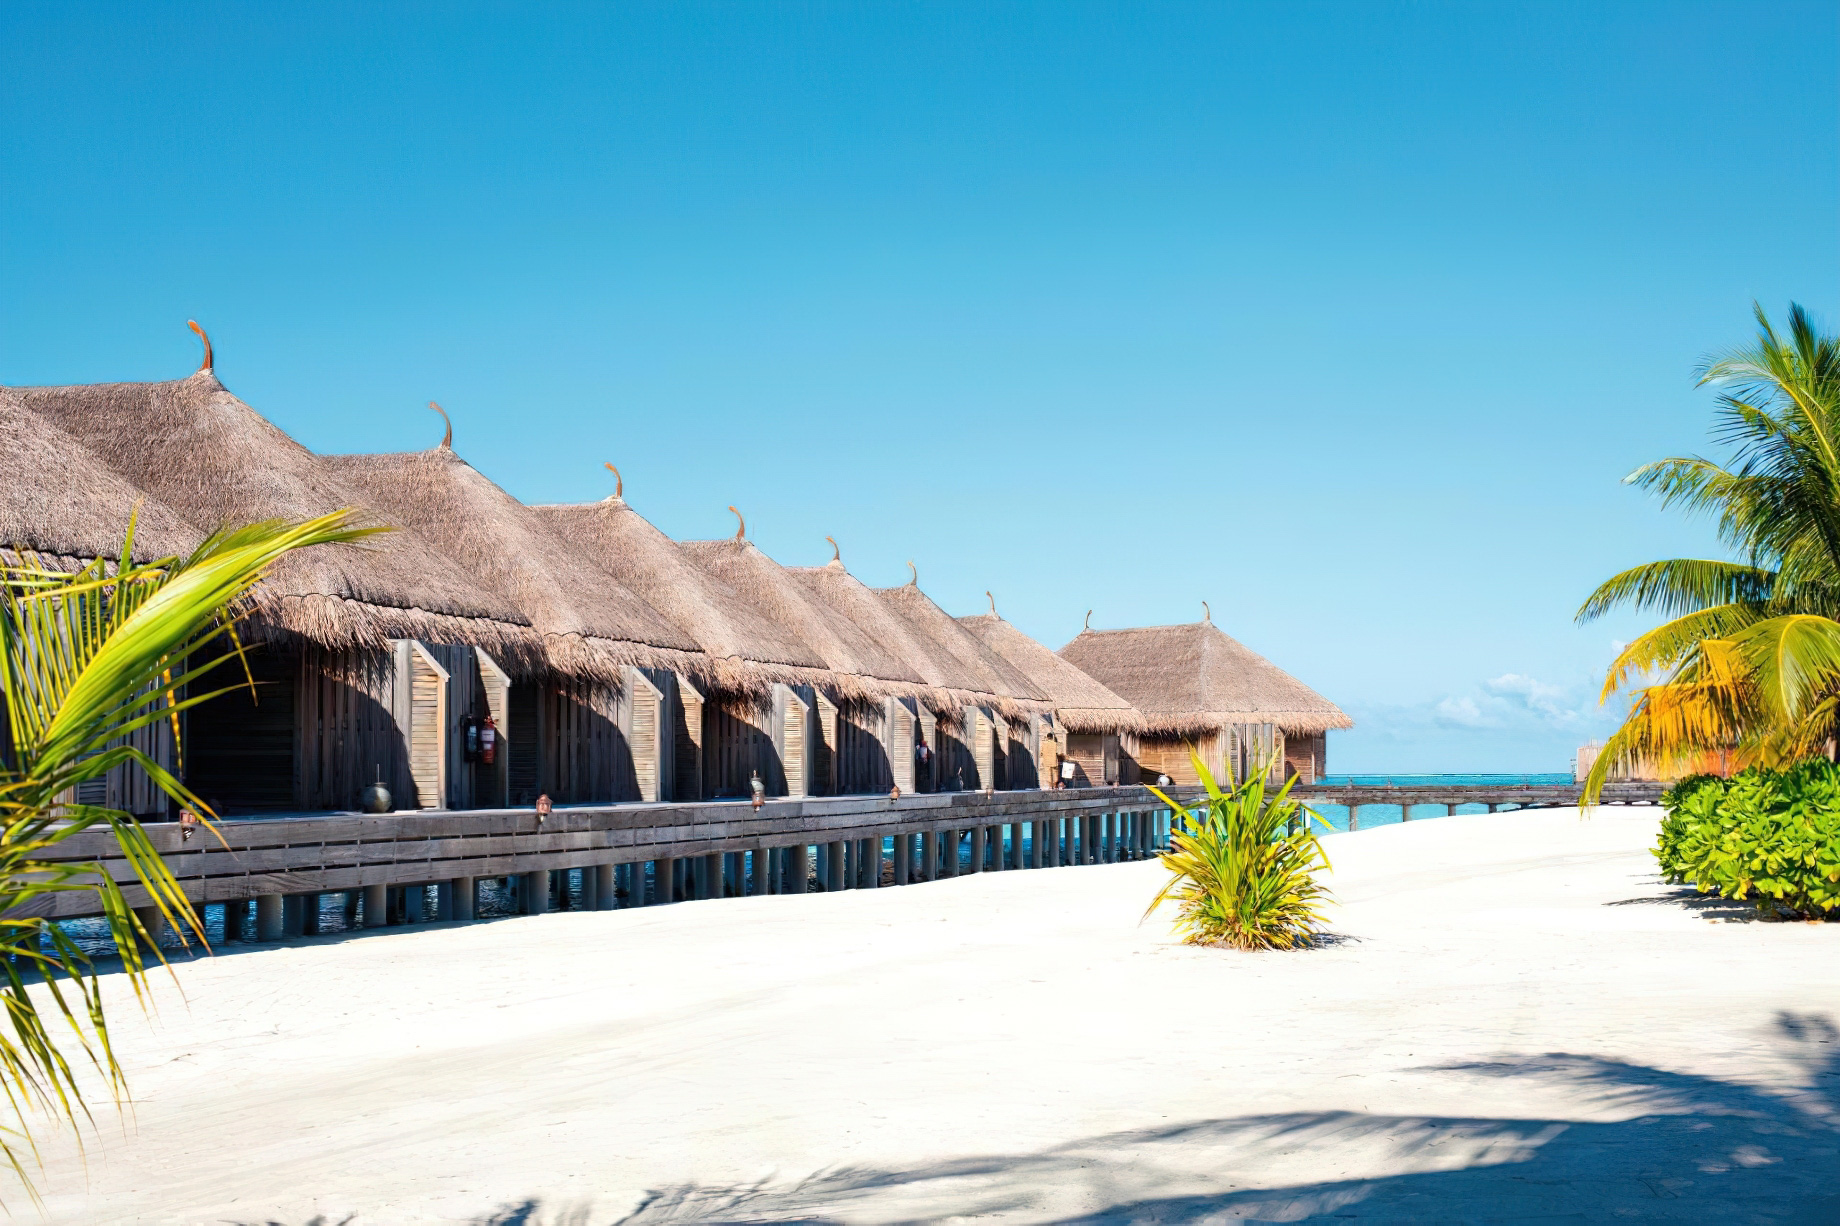 Constance Moofushi Resort – South Ari Atoll, Maldives – Beach Villa View